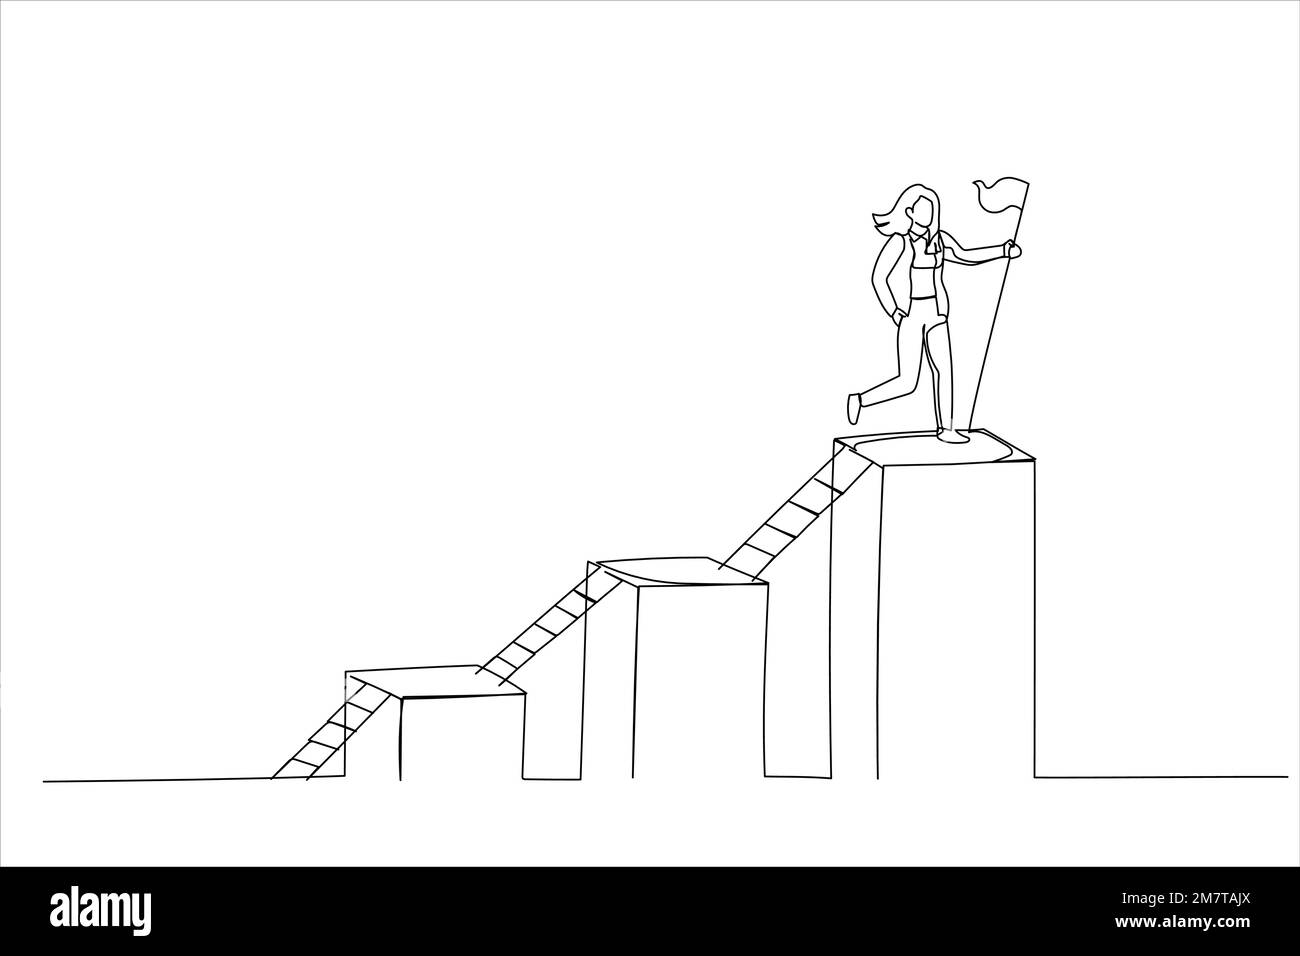 Abbildung: Geschäftsfrau, die Schritt für Schritt auf eine Leiter klettert, um das Ziel zu erreichen. Schritt zum Geschäftswachstum, Leiter des Erfolgs. Einzeilige Kunst Stock Vektor